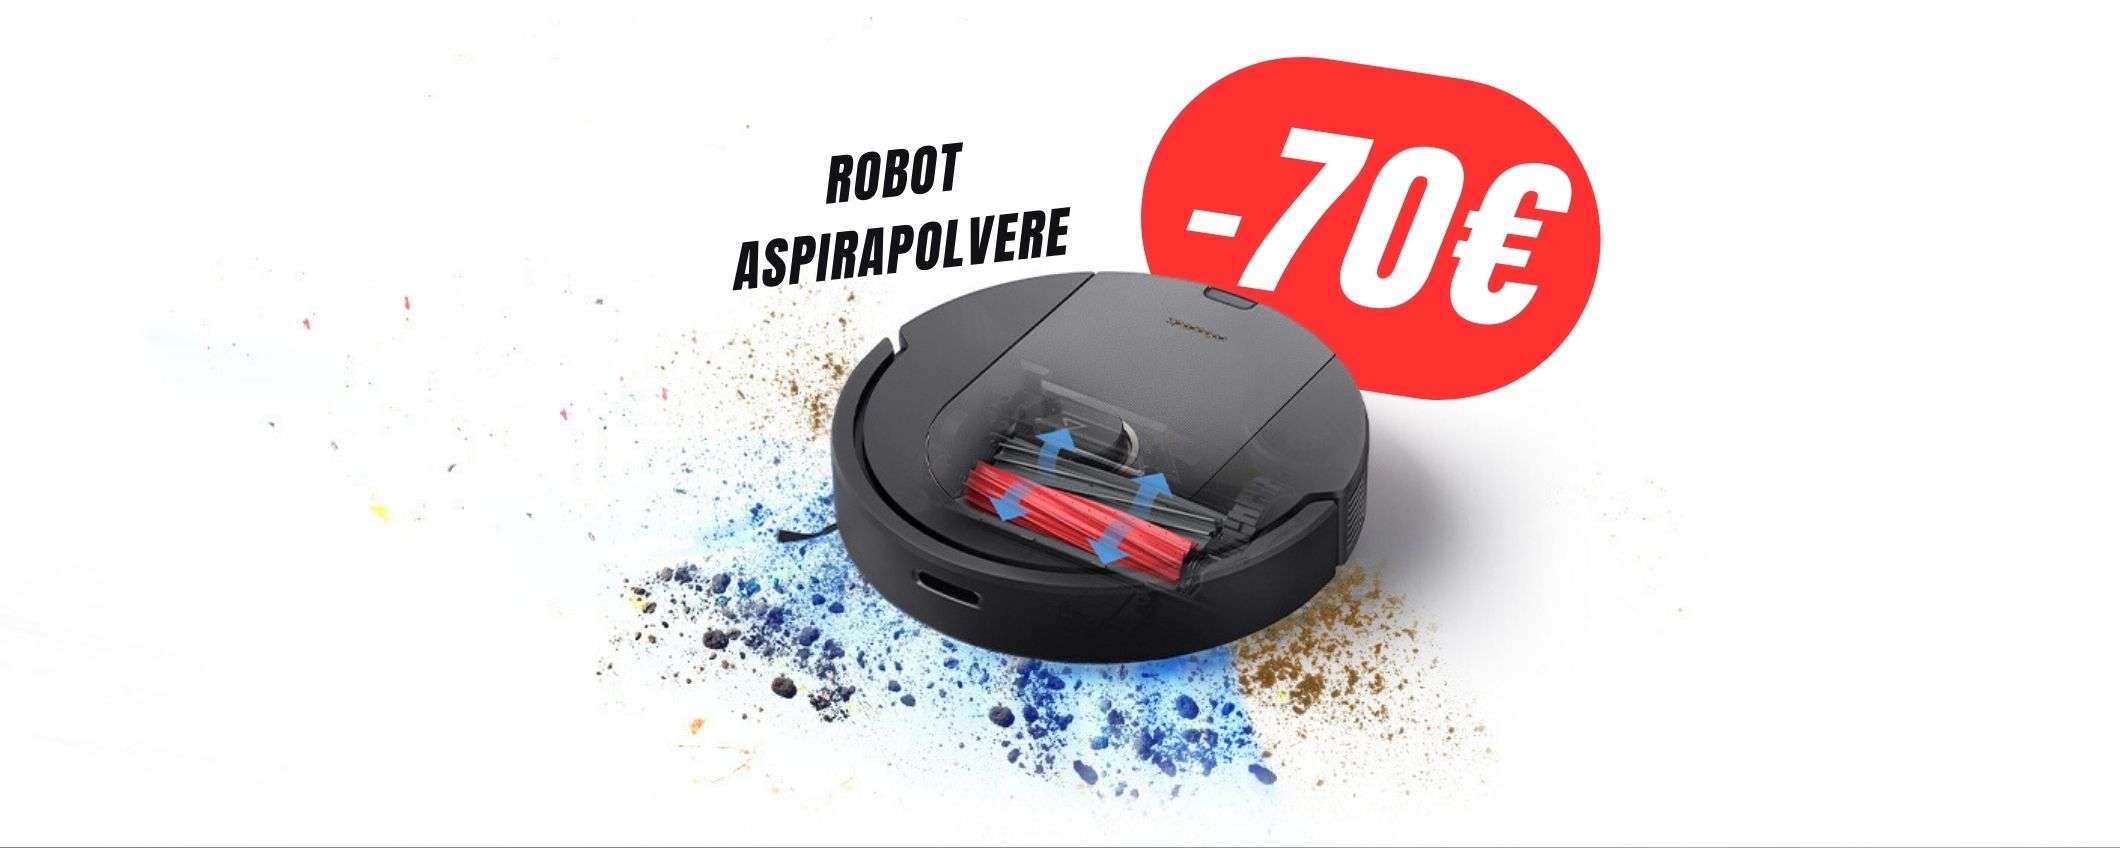 COUPON da 70€ per questo robot aspirapolvere con spazzole in gomma!